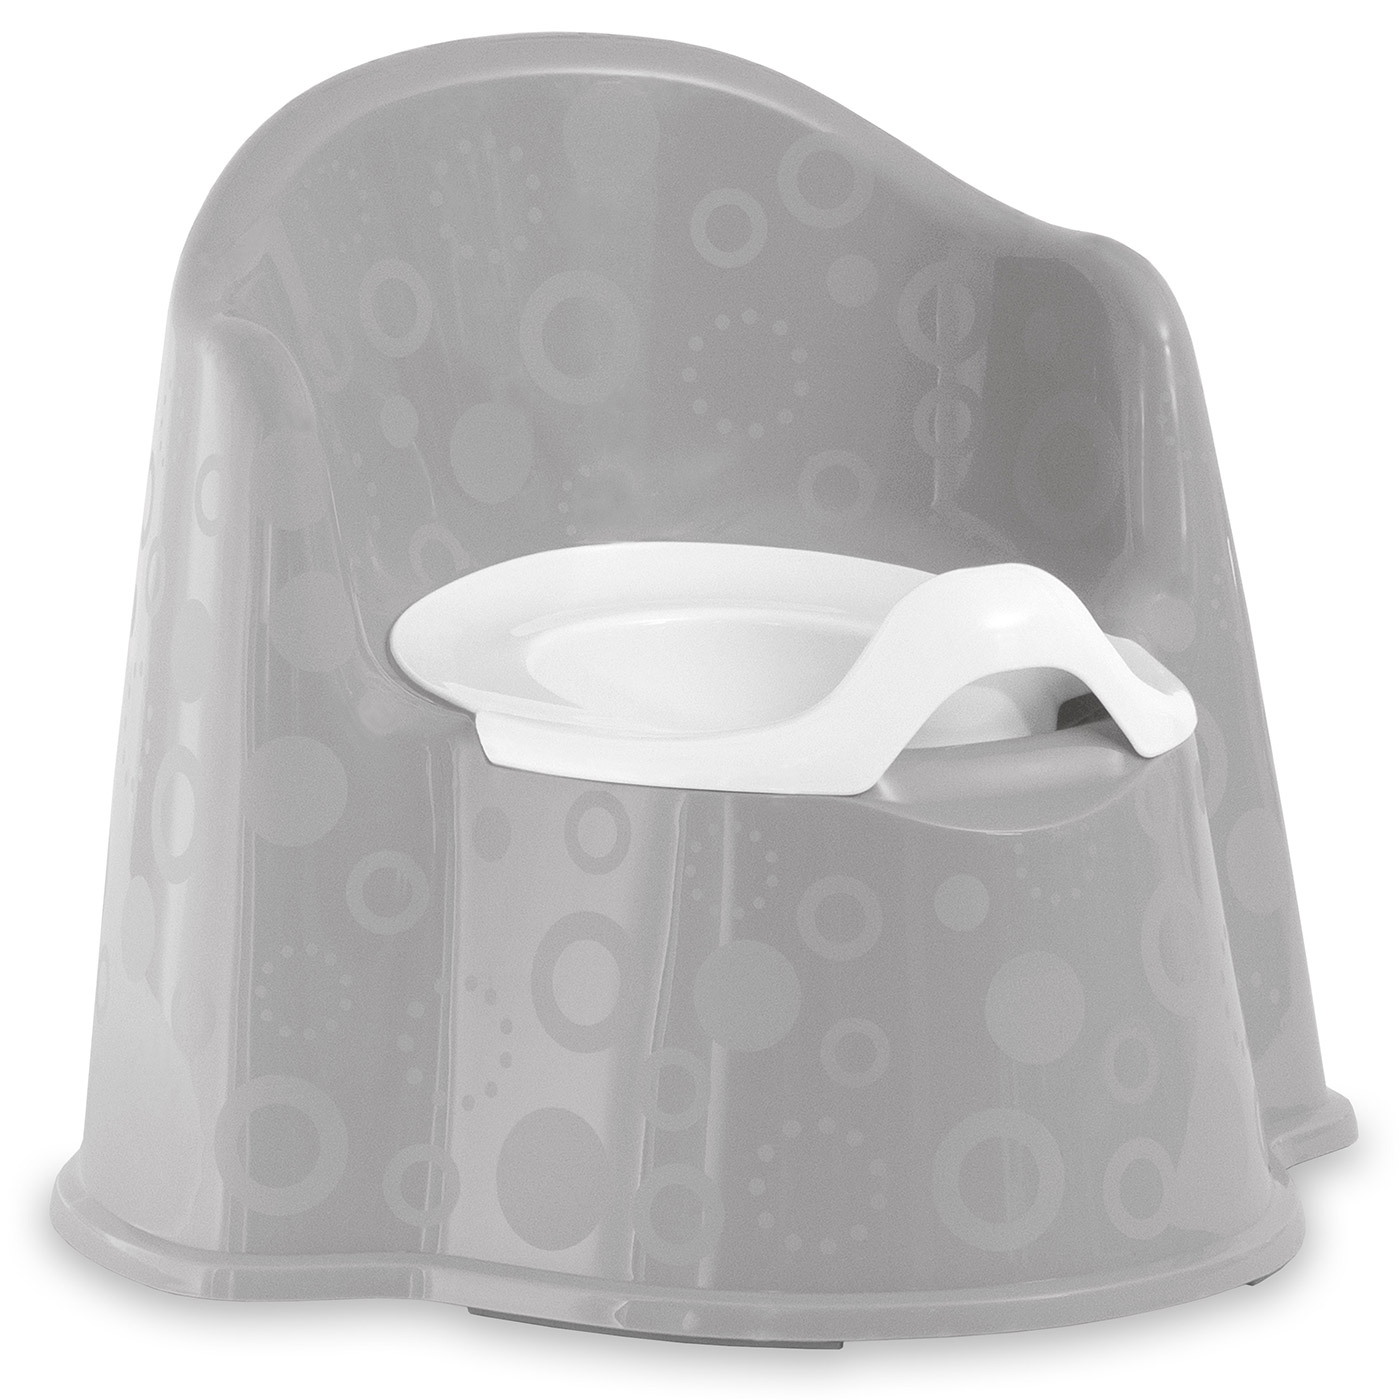 Горшок-кресло анатомический Funkids Potty Comfort 16205GR / Grey горшок подножка summer infant 3 в 1 step by step potty розовый